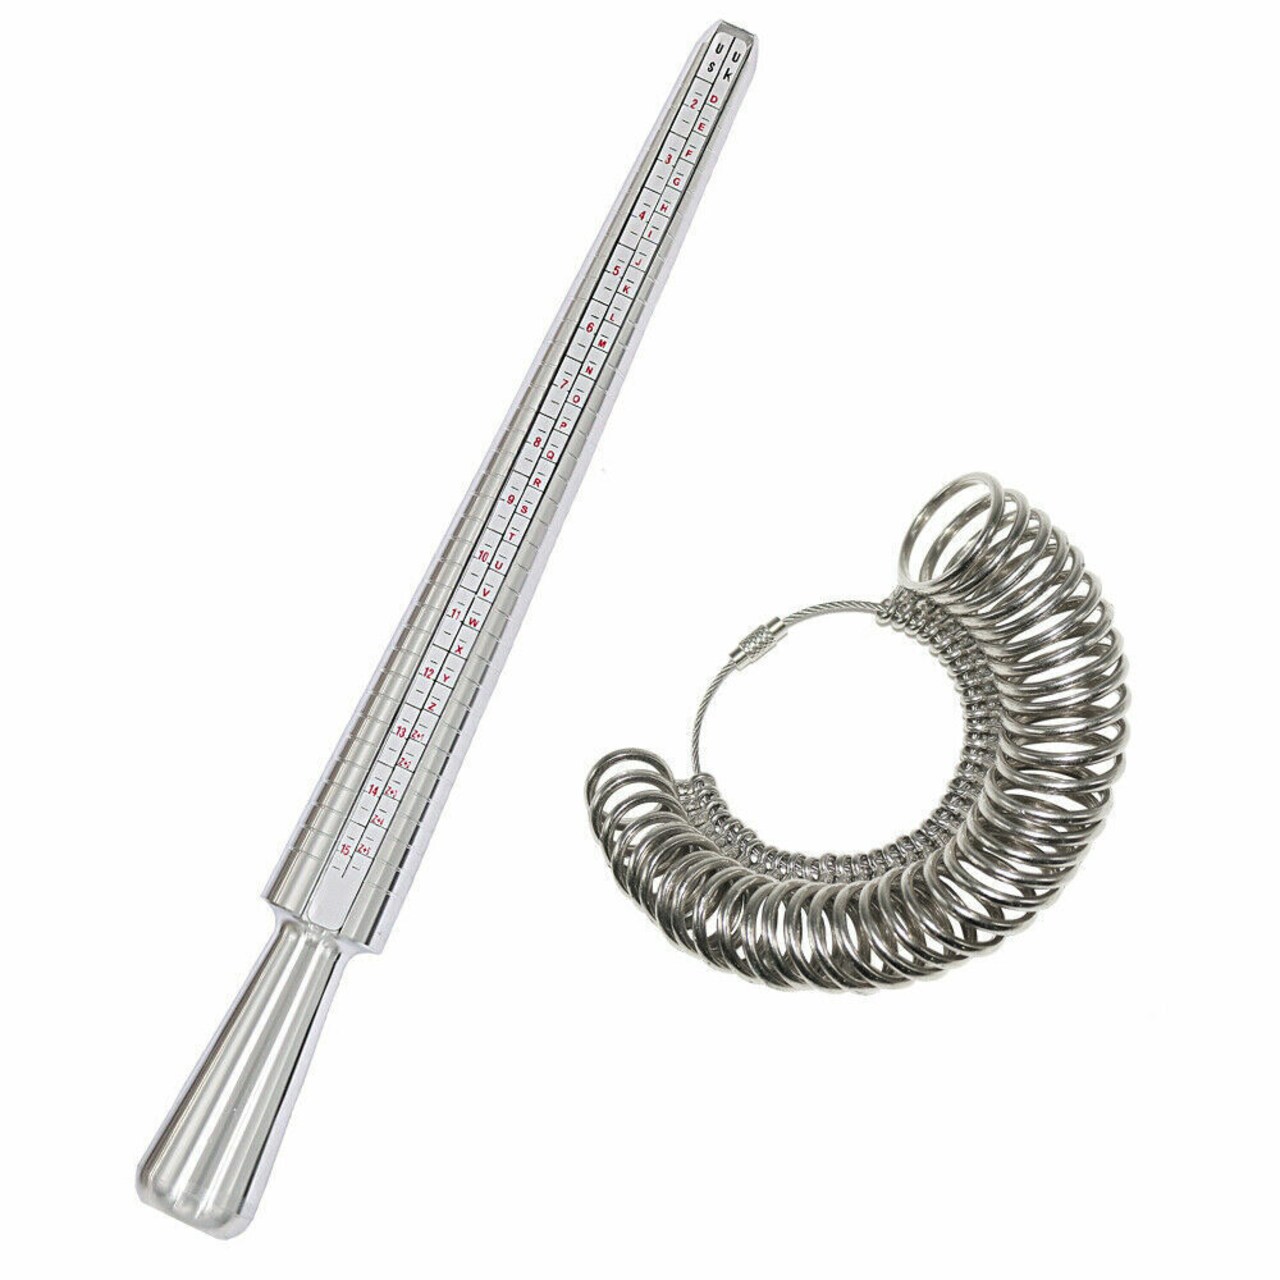 Kitcheniva Metal Ring Sizer Measure Stick Standard Jewelry Tool